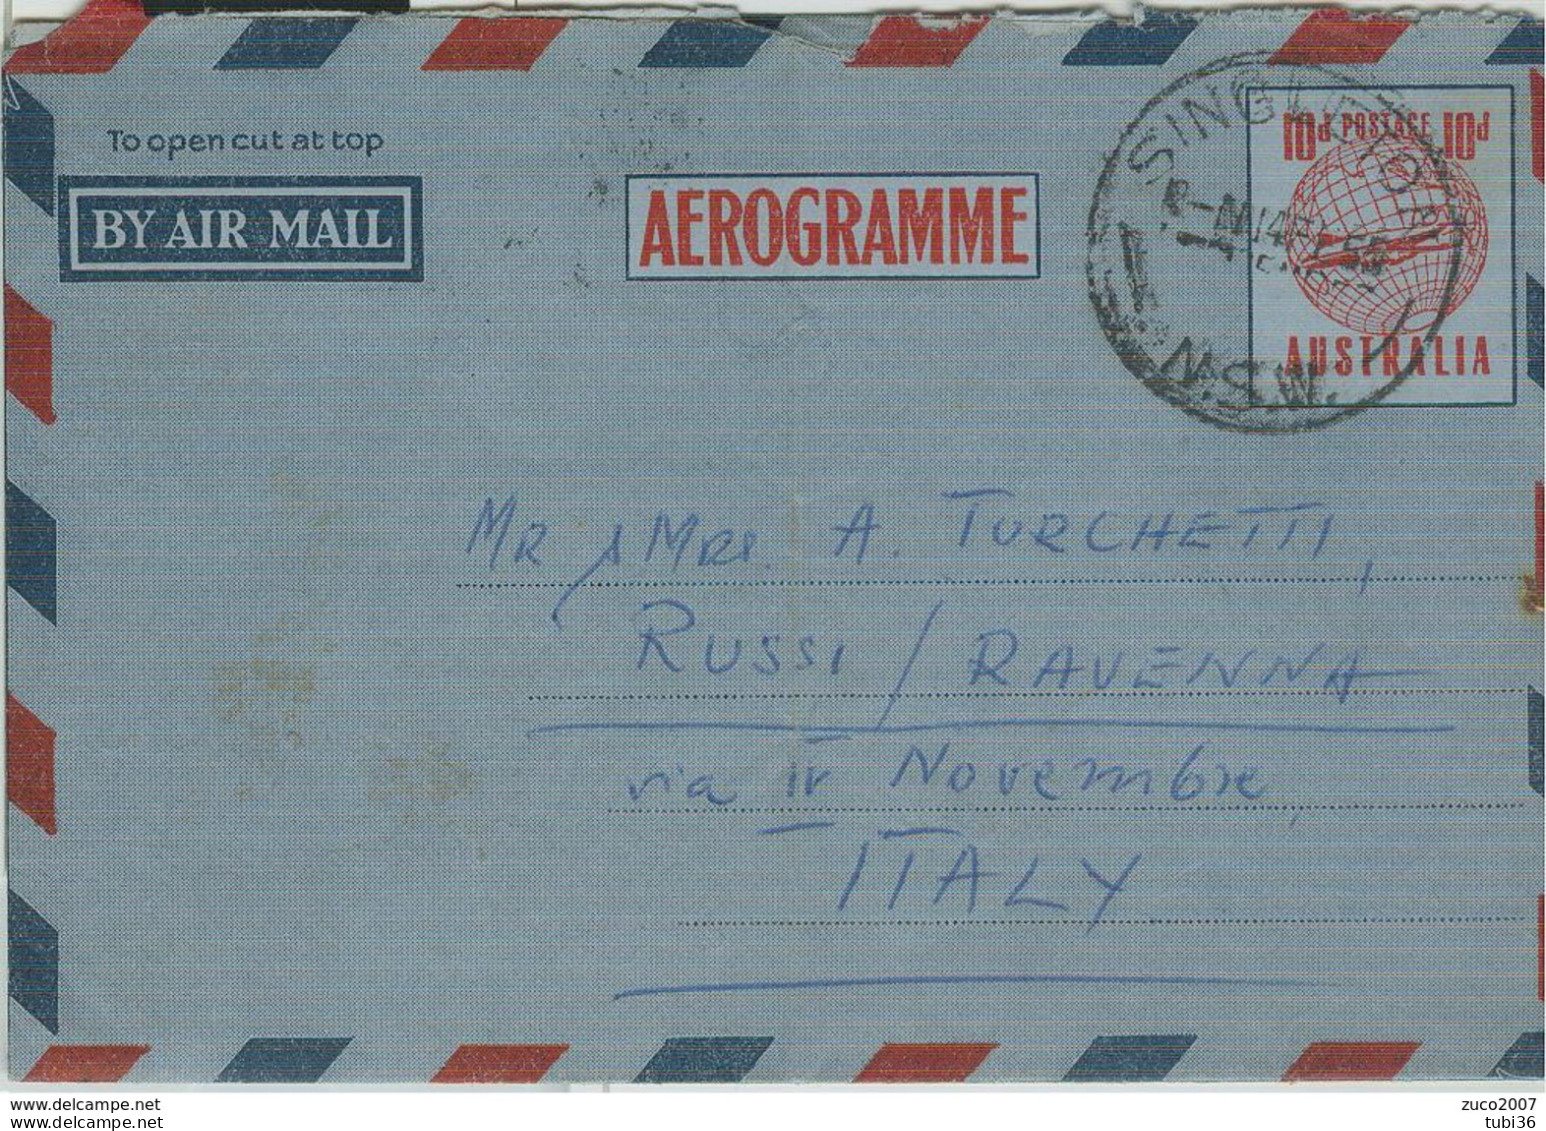 AUSTRALIA-AEROGRAMME- STAMPING SINGLETON, FOR ITALY, 1955, - Aerograms